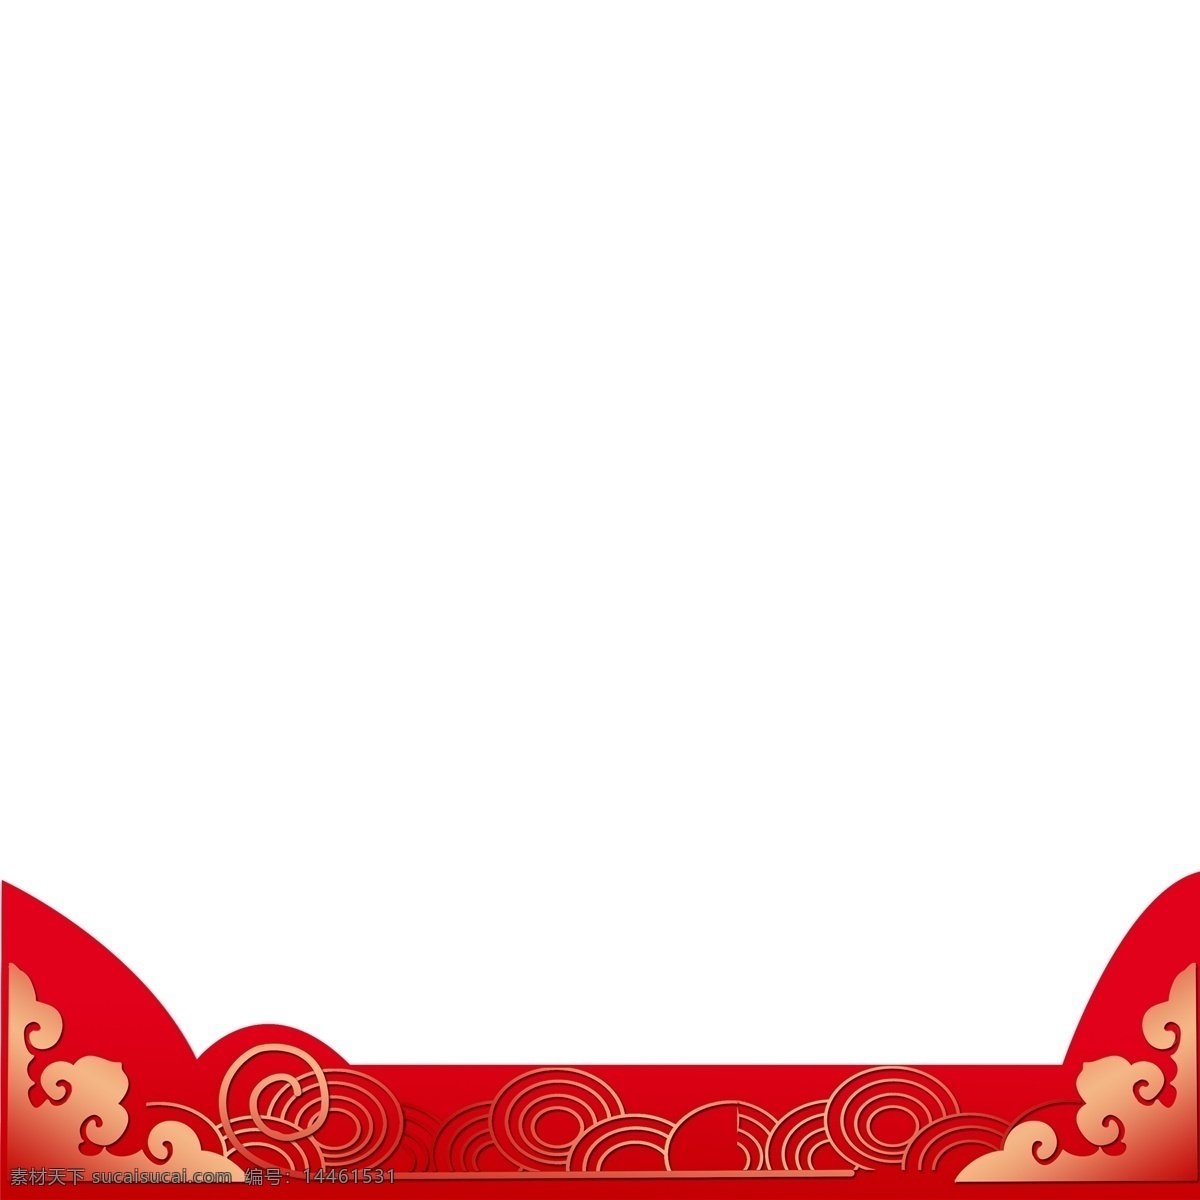 中国 风 祥云 插画 免 抠 图 古典图案 中国红 中国传统背景 黄色的祥云 中国风 红色云朵 中国风插画 免抠图